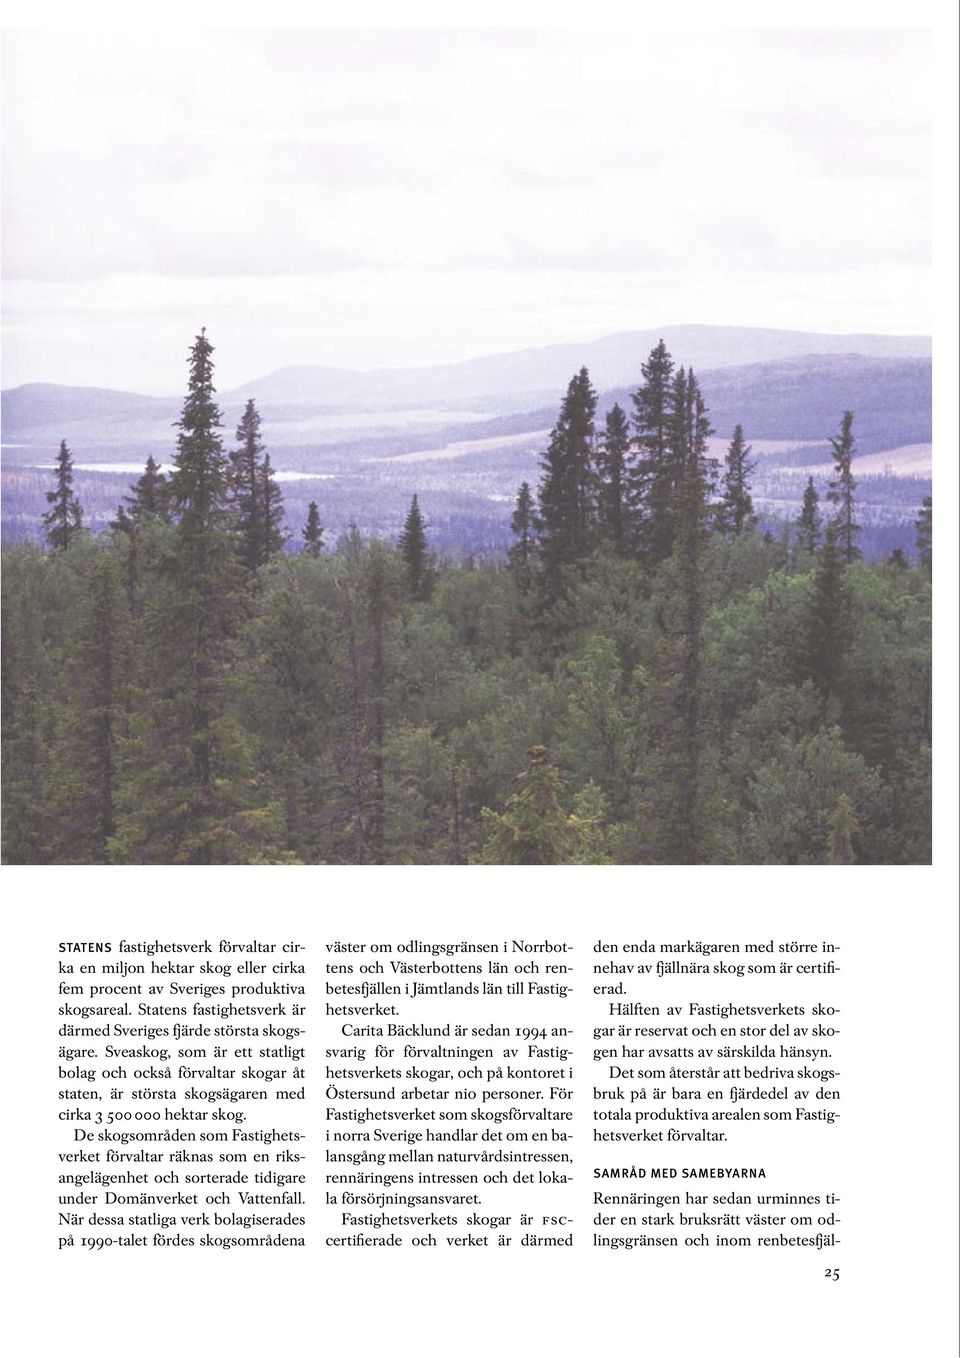 De skogsområden som Fastighetsverket förvaltar räknas som en riksangelägenhet och sorterade tidigare under Domänverket och Vattenfall.